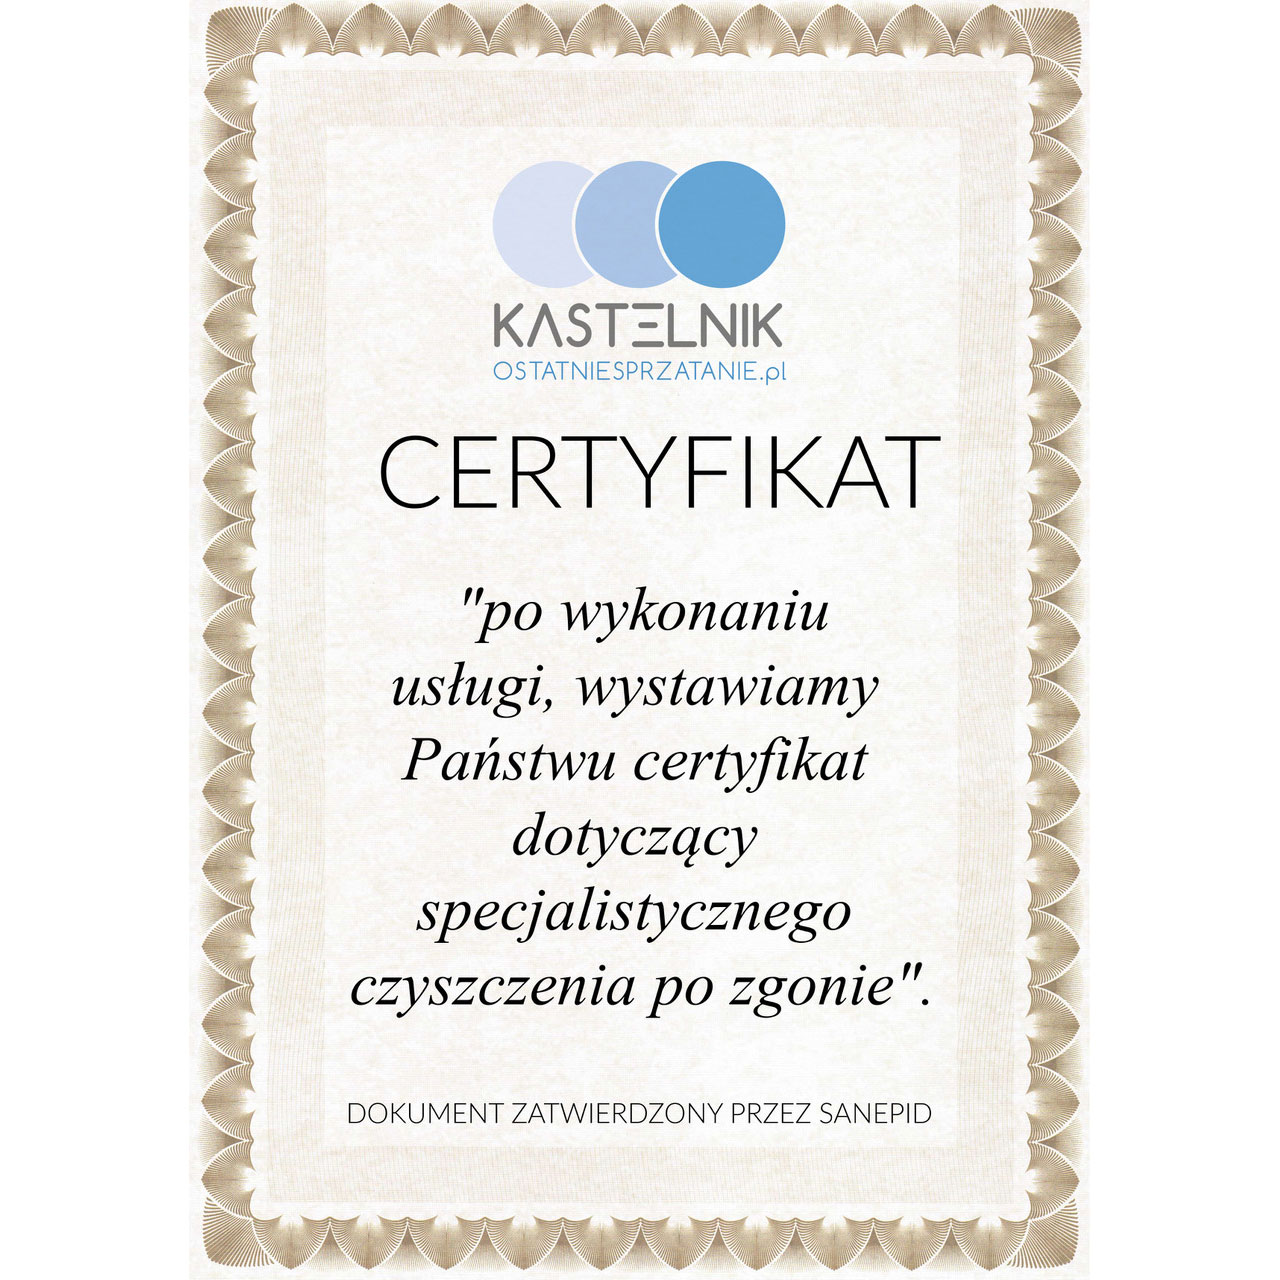 Certyfikat sprzątania po zmarłych w Kaliszu